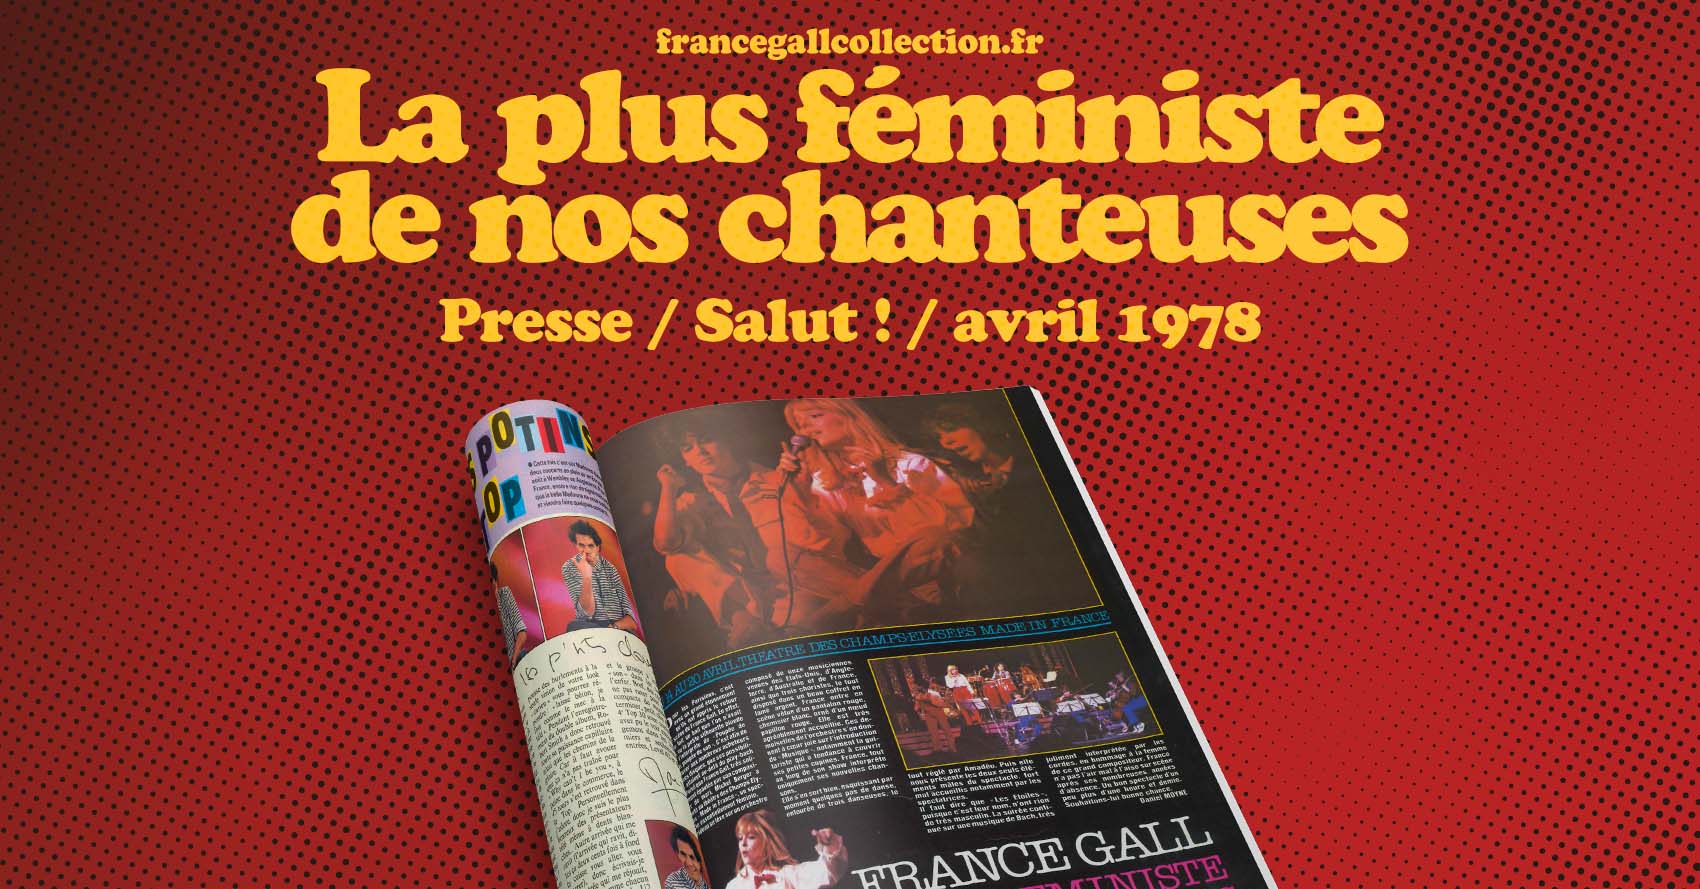 Du 14 au 20 avril, théâtre des Champs-Élysées Made in France Pour les Parisiens, c'est avec un grand étonnement qu'ils ont appris le retour sur scène de France Gall.